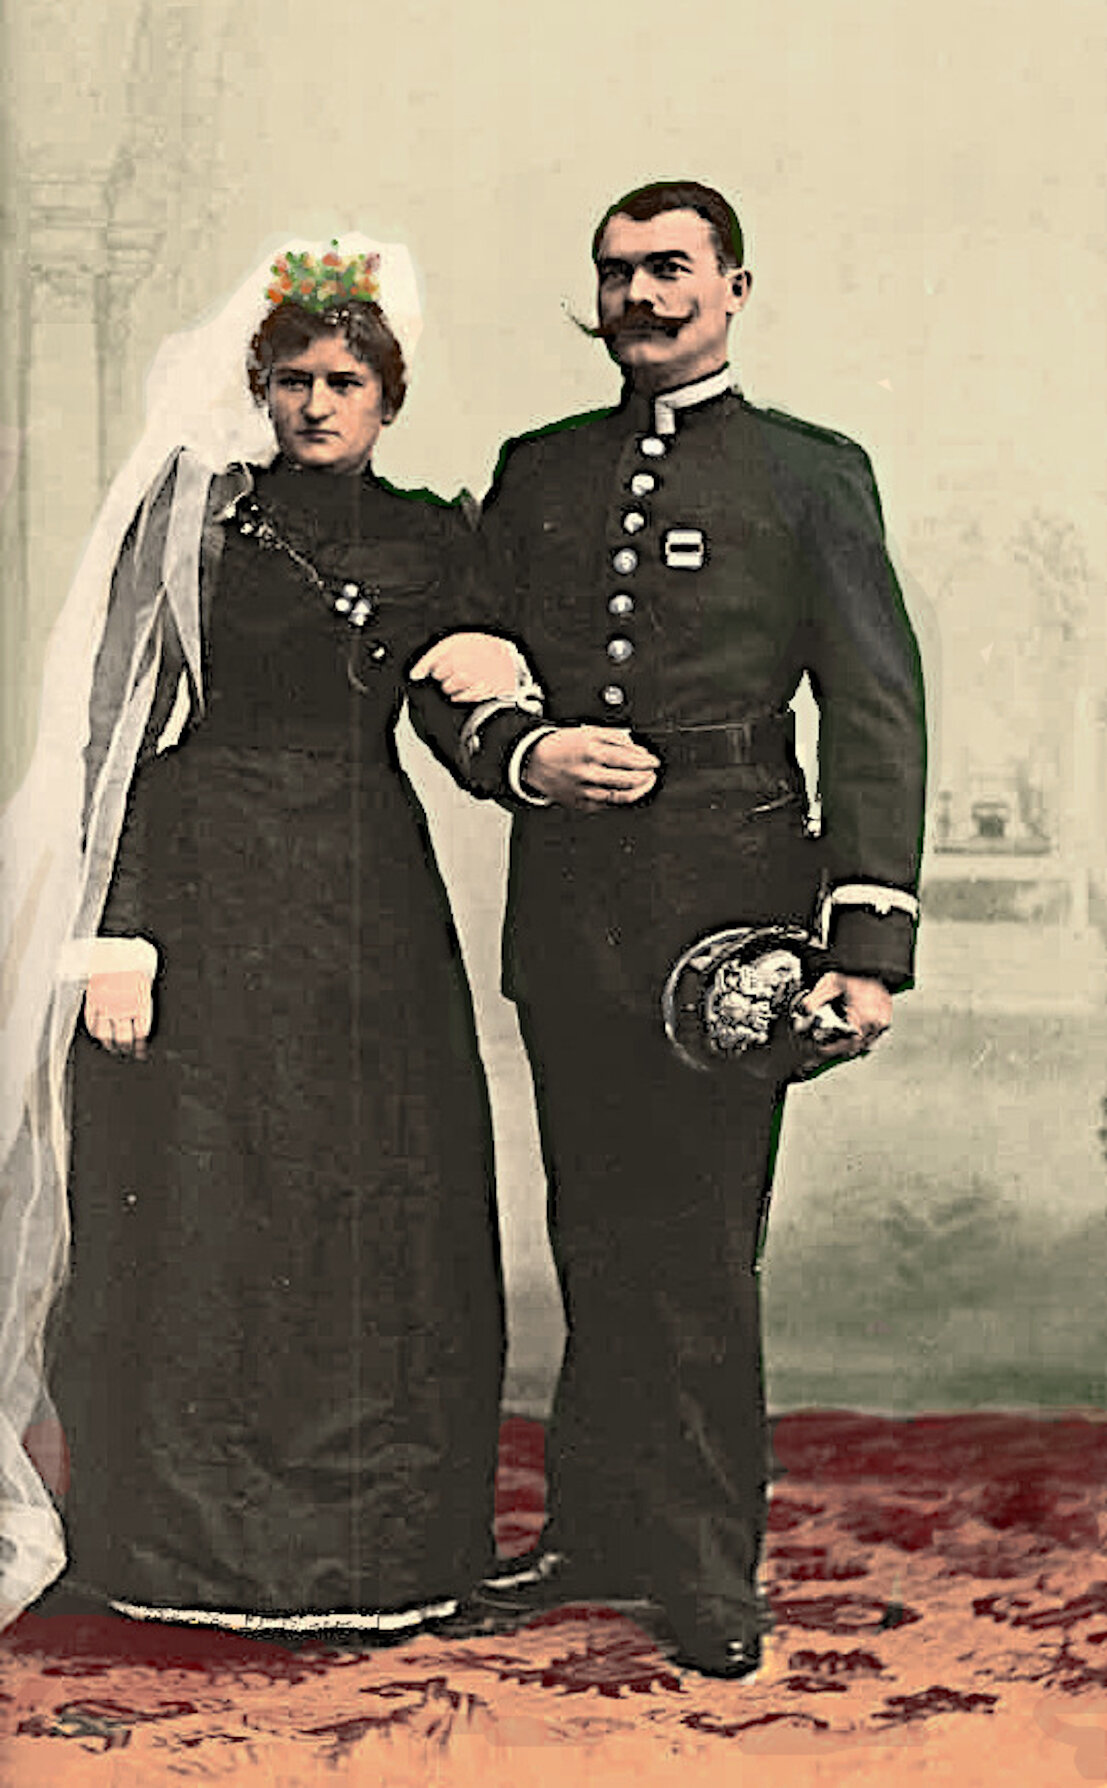 Die Eheleute Albrecht (senior)